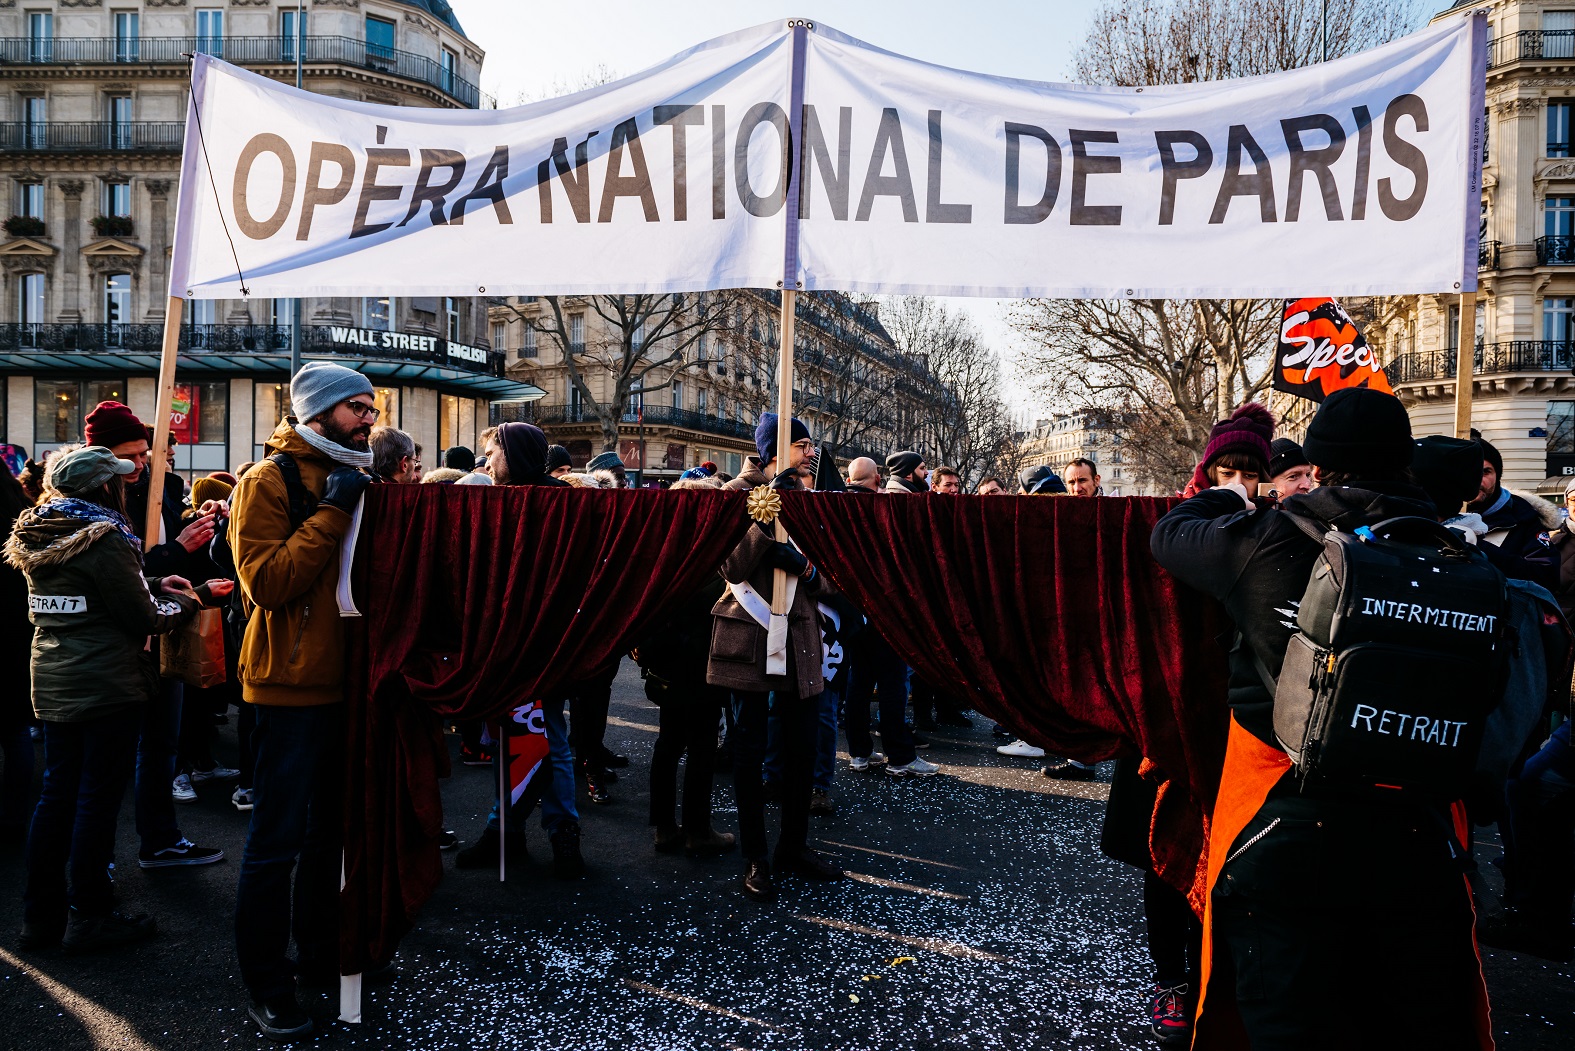 Em frente à Opera Nacional de Paris, manifestantes fazem mais um protesto contra a reforma da previdência. Foto Karine Pierre / Hans Lucas Formato de mídia